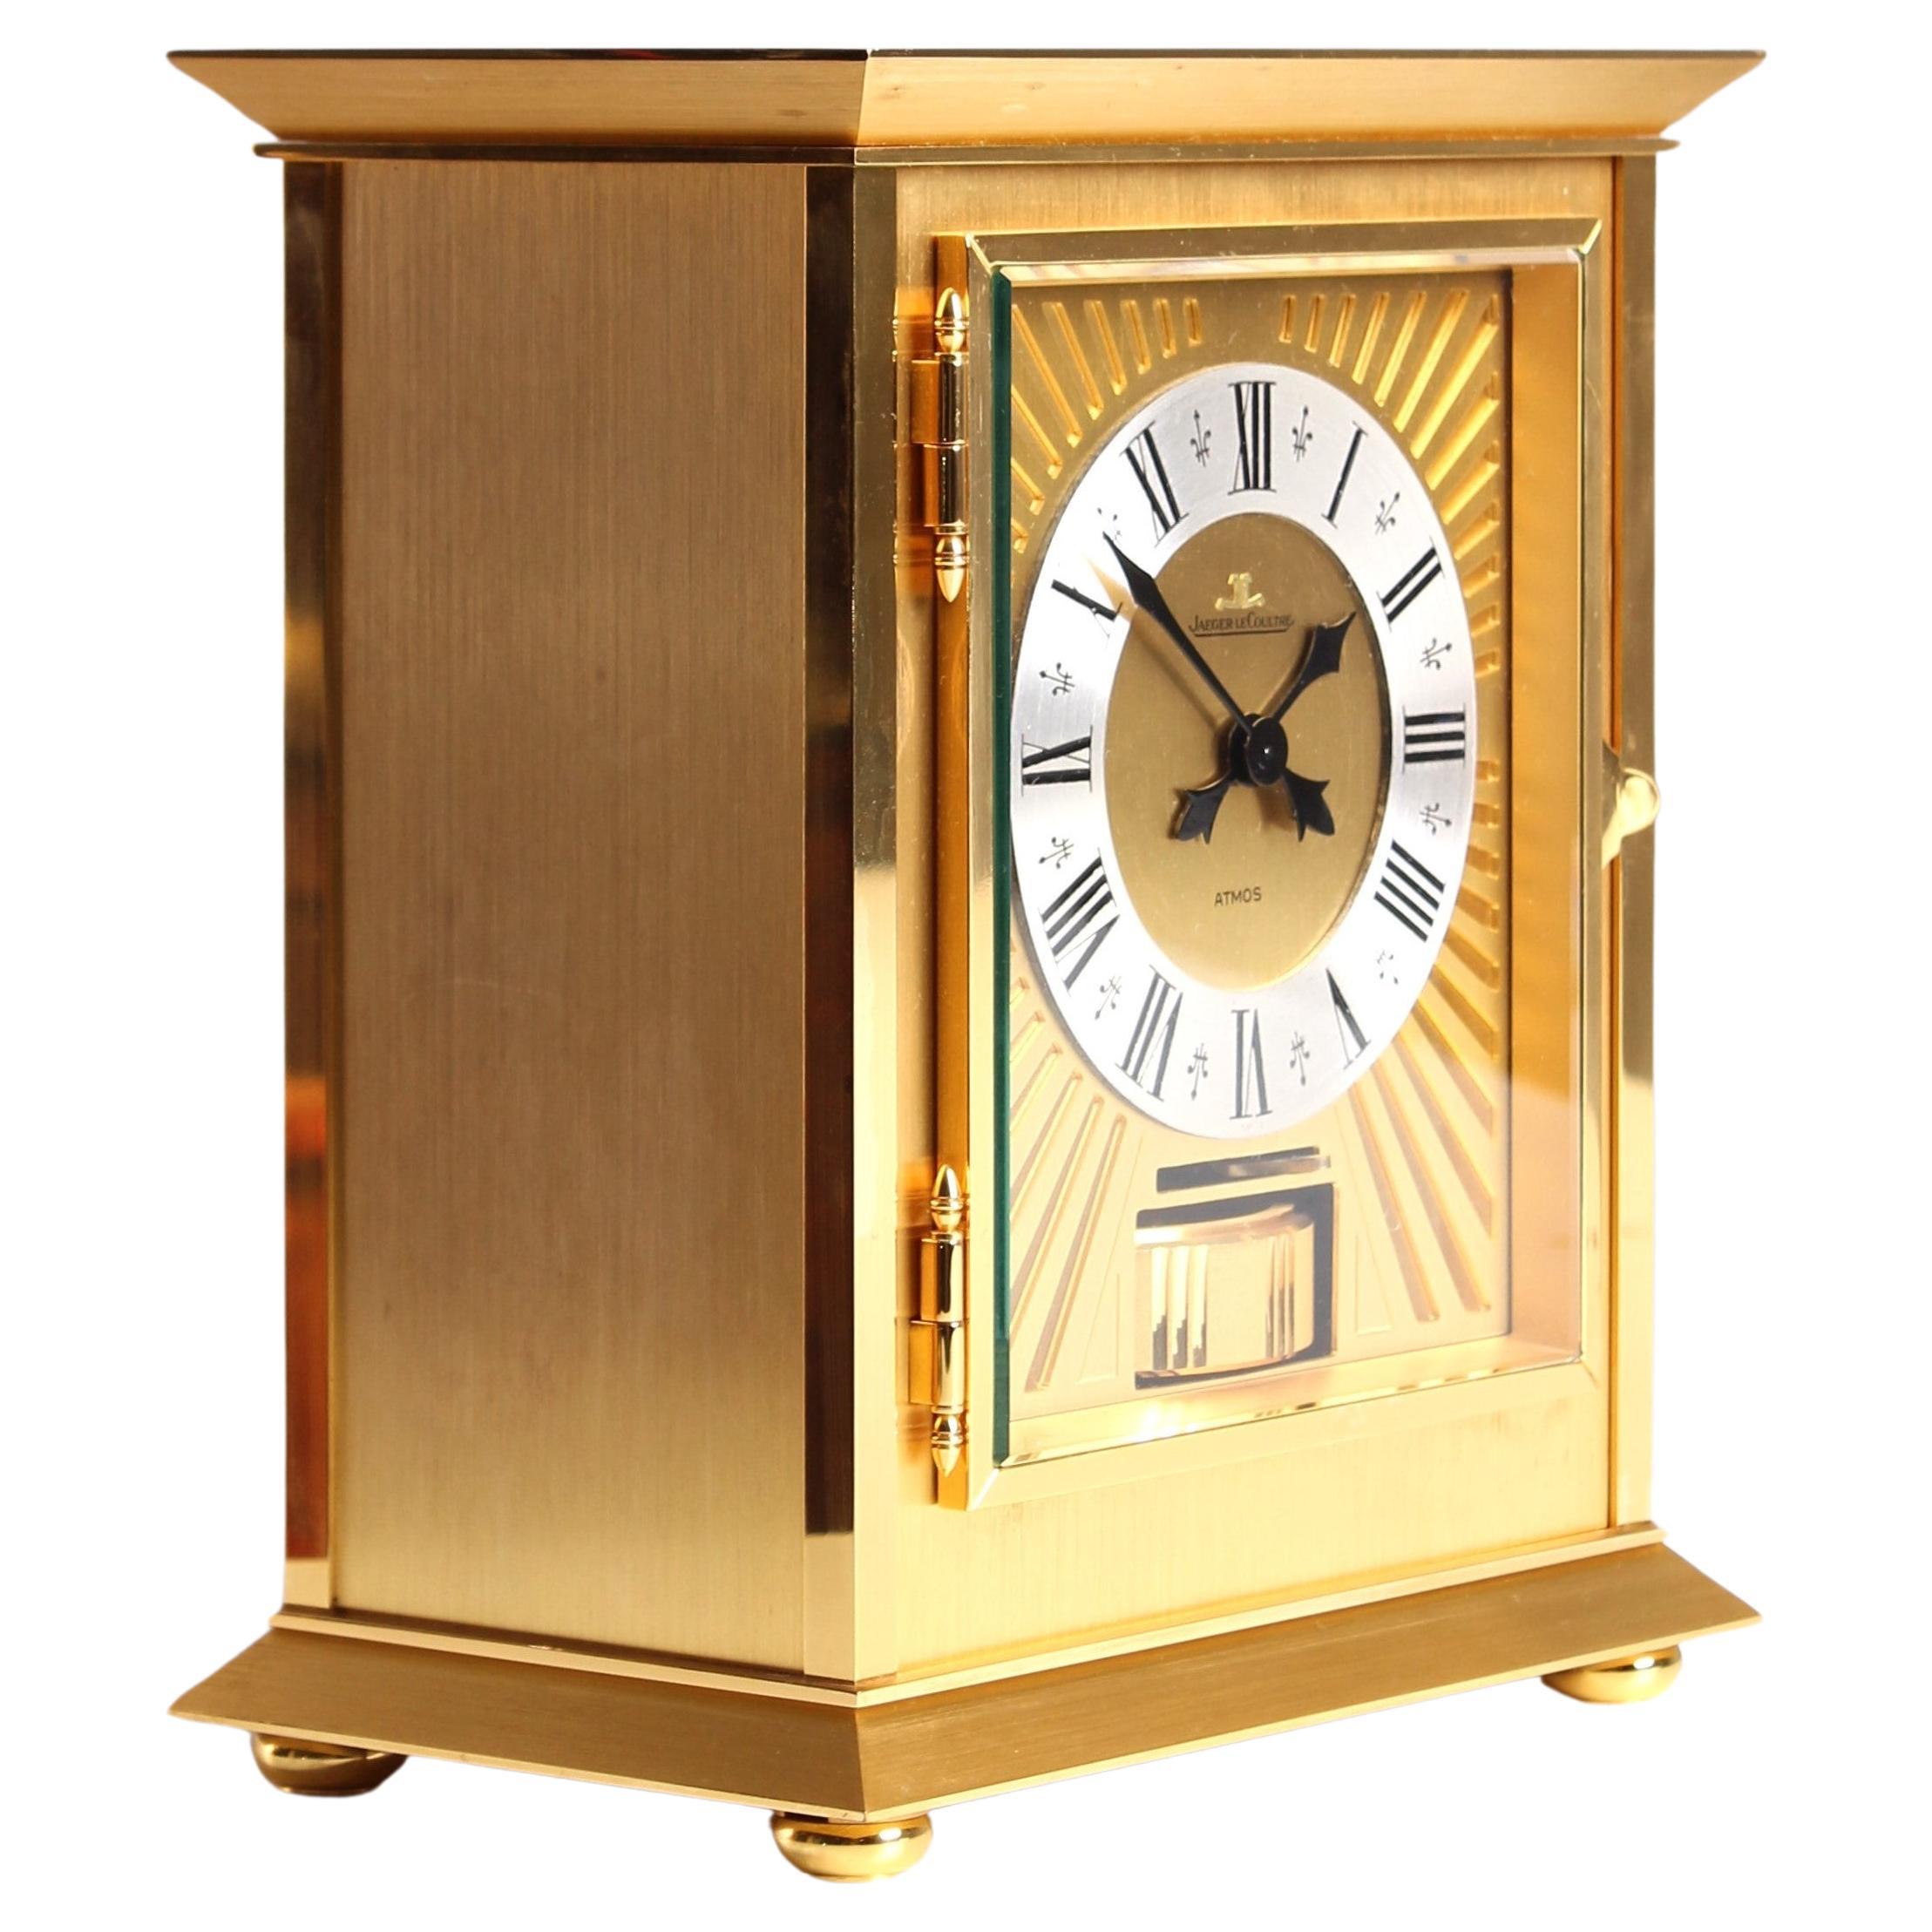 Horloge Atmos de Jaeger LeCoultre, en or royal, fabriquée en 1978